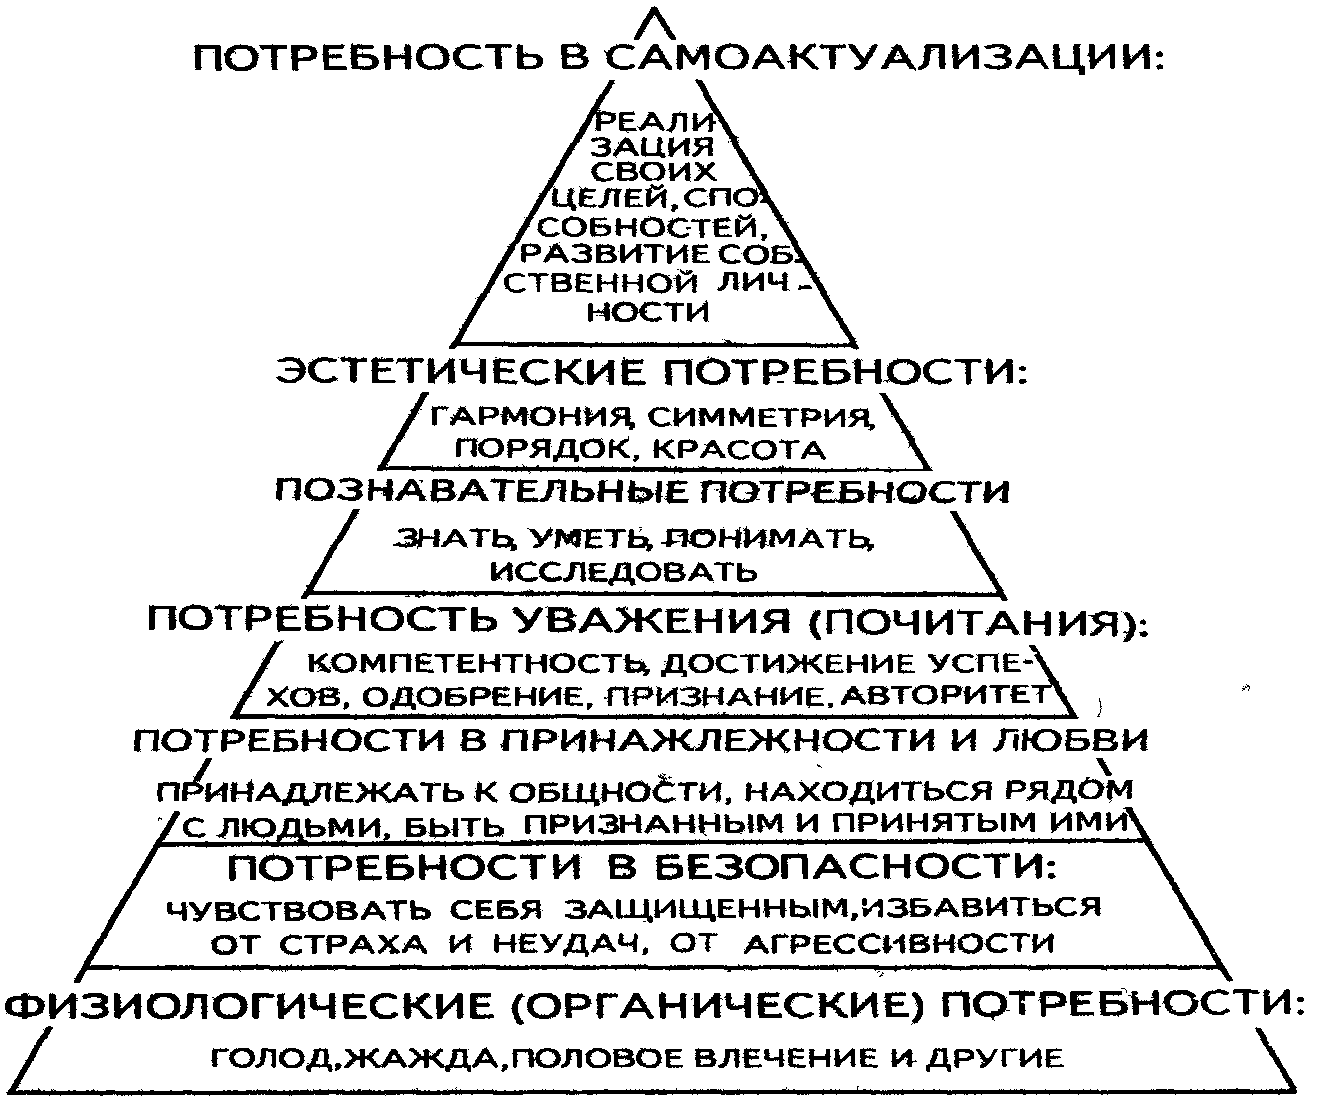 Античная потребность. Пирамида потребностей Маслоу 7 уровней. Потребности по Маслоу пирамида 14. Иерархия человеческих потребностей (по теории а. Маслоу).. Пирамида потребностей по Маслоу черно белая.